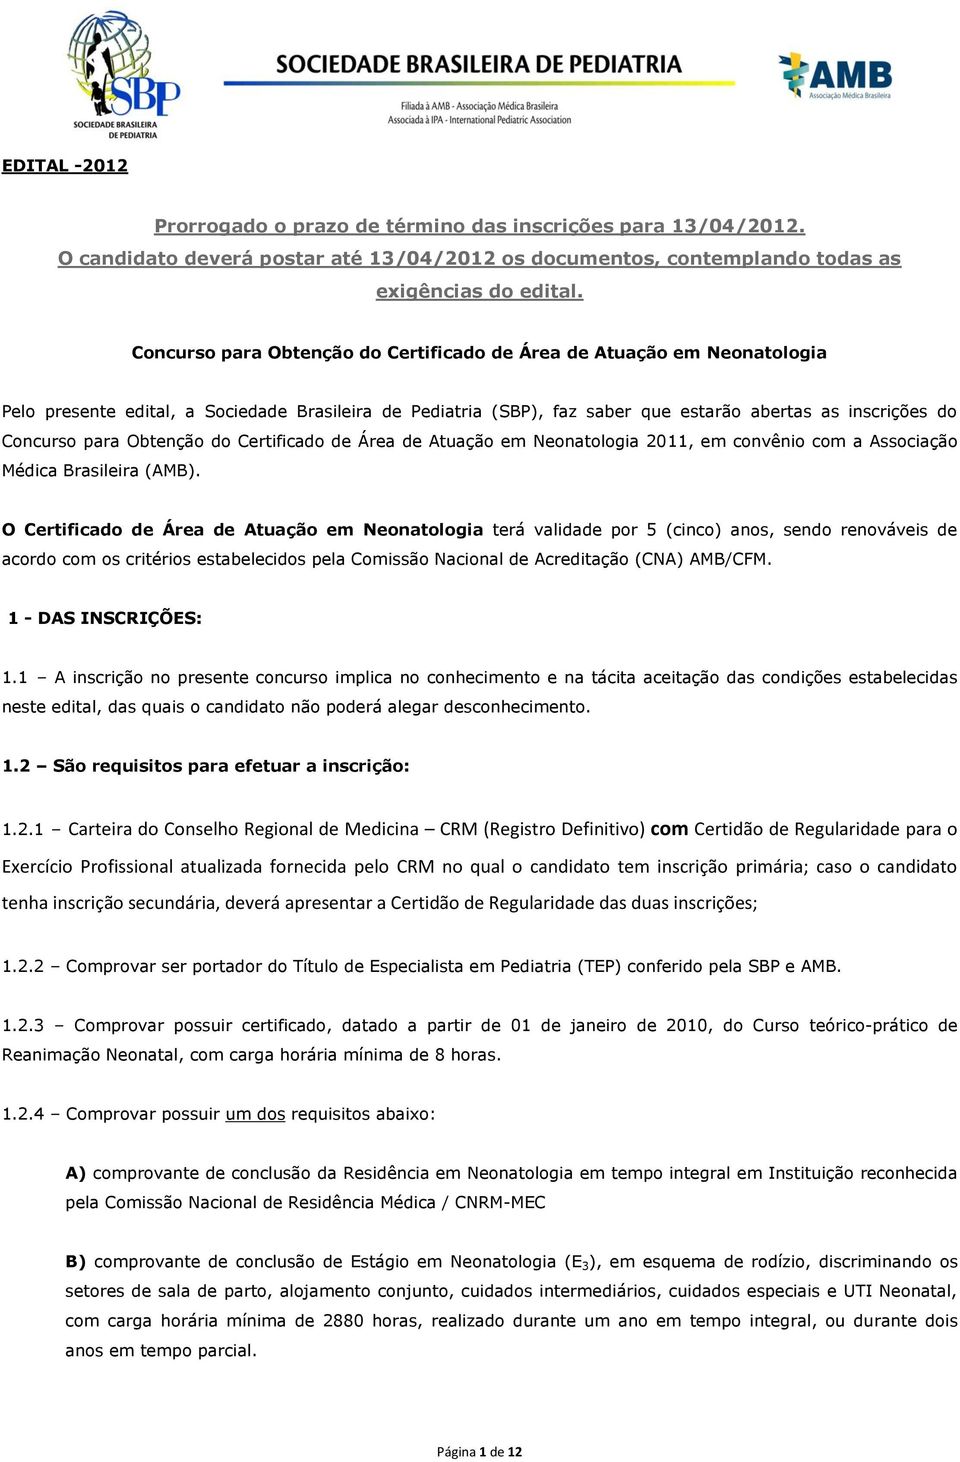 Obtenção do Certificado de Área de Atuação em Neonatologia 2011, em convênio com a Associação Médica Brasileira (AMB).